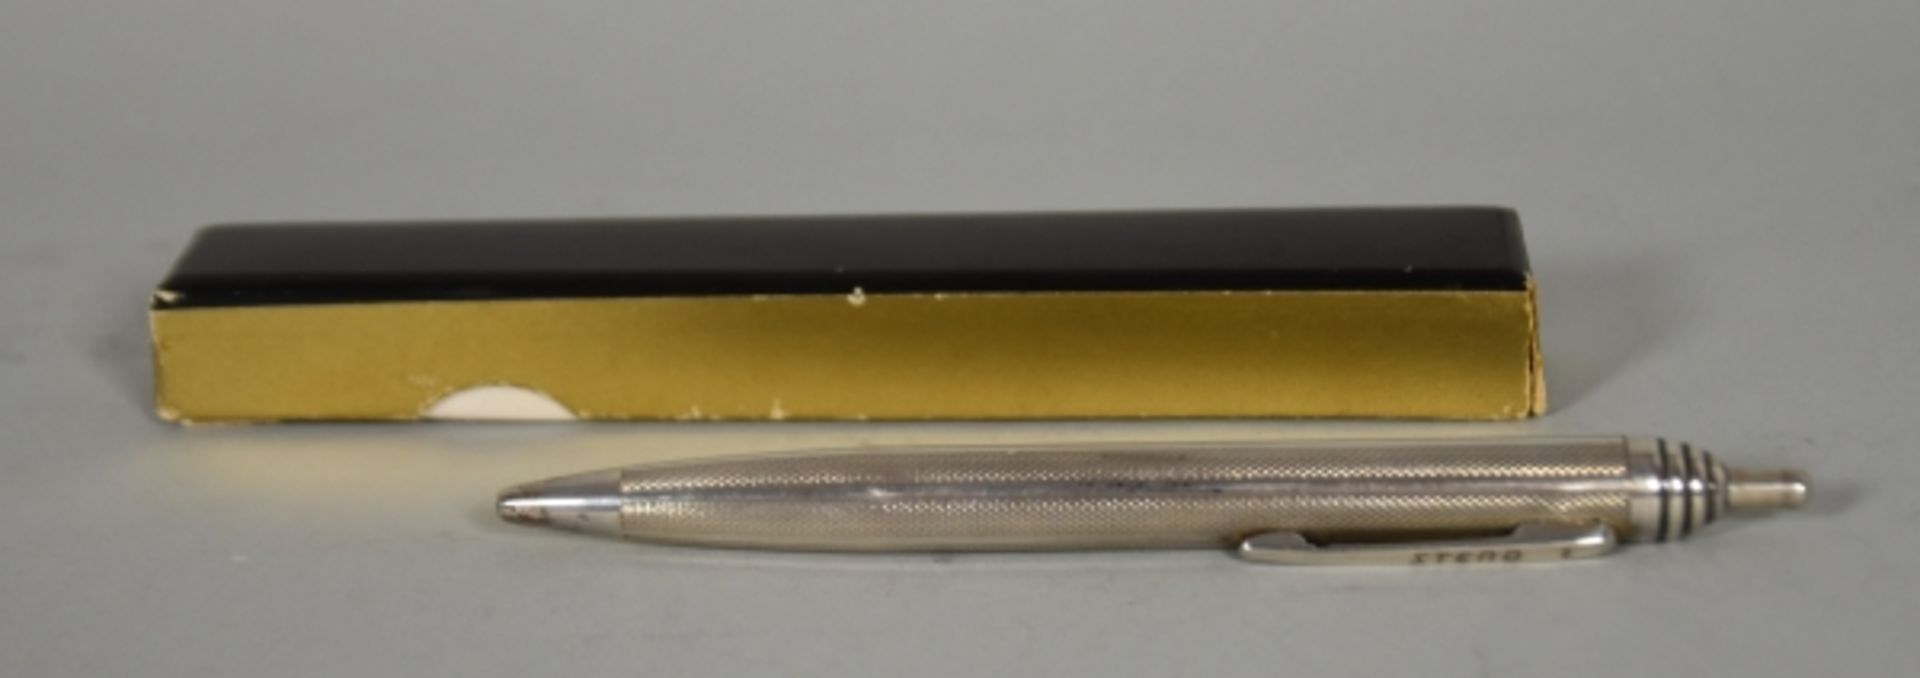 SCHREIB-SET verschieden, bestehend aus Füller mit Schildpatt-Design u. 14ct Goldfeder, anbei Steno- - Bild 4 aus 9